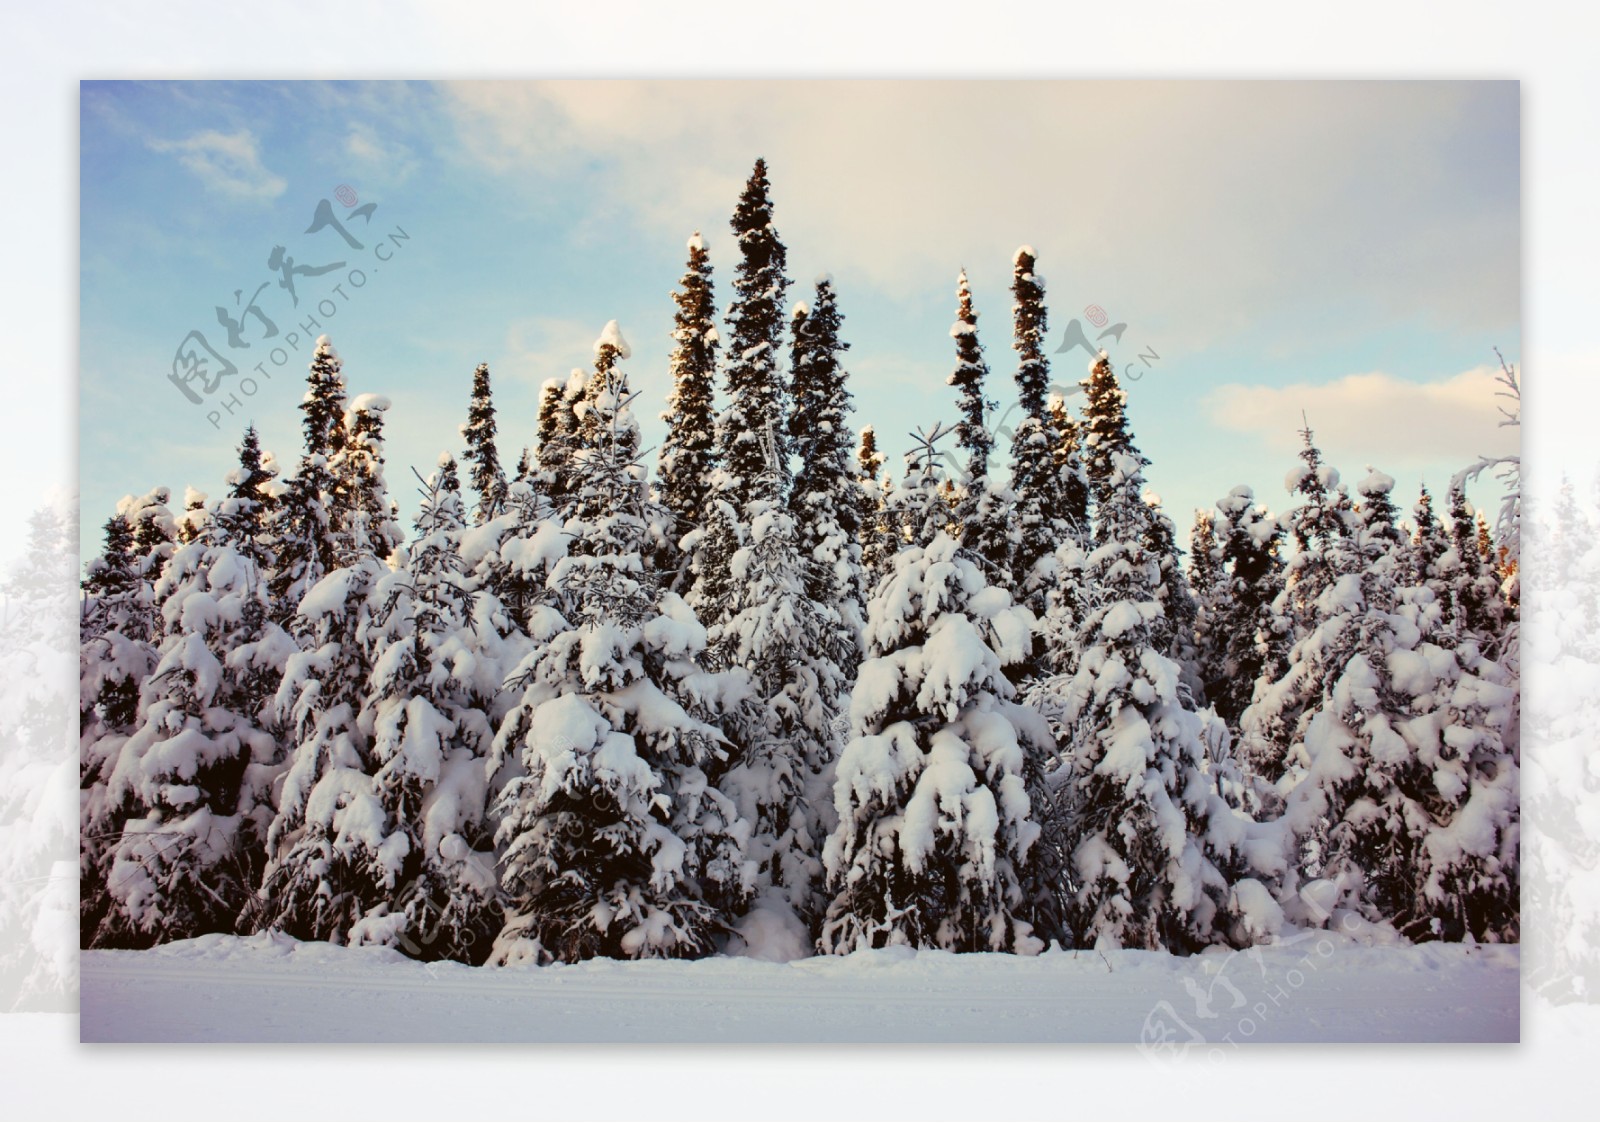 冬季雪松风景图片